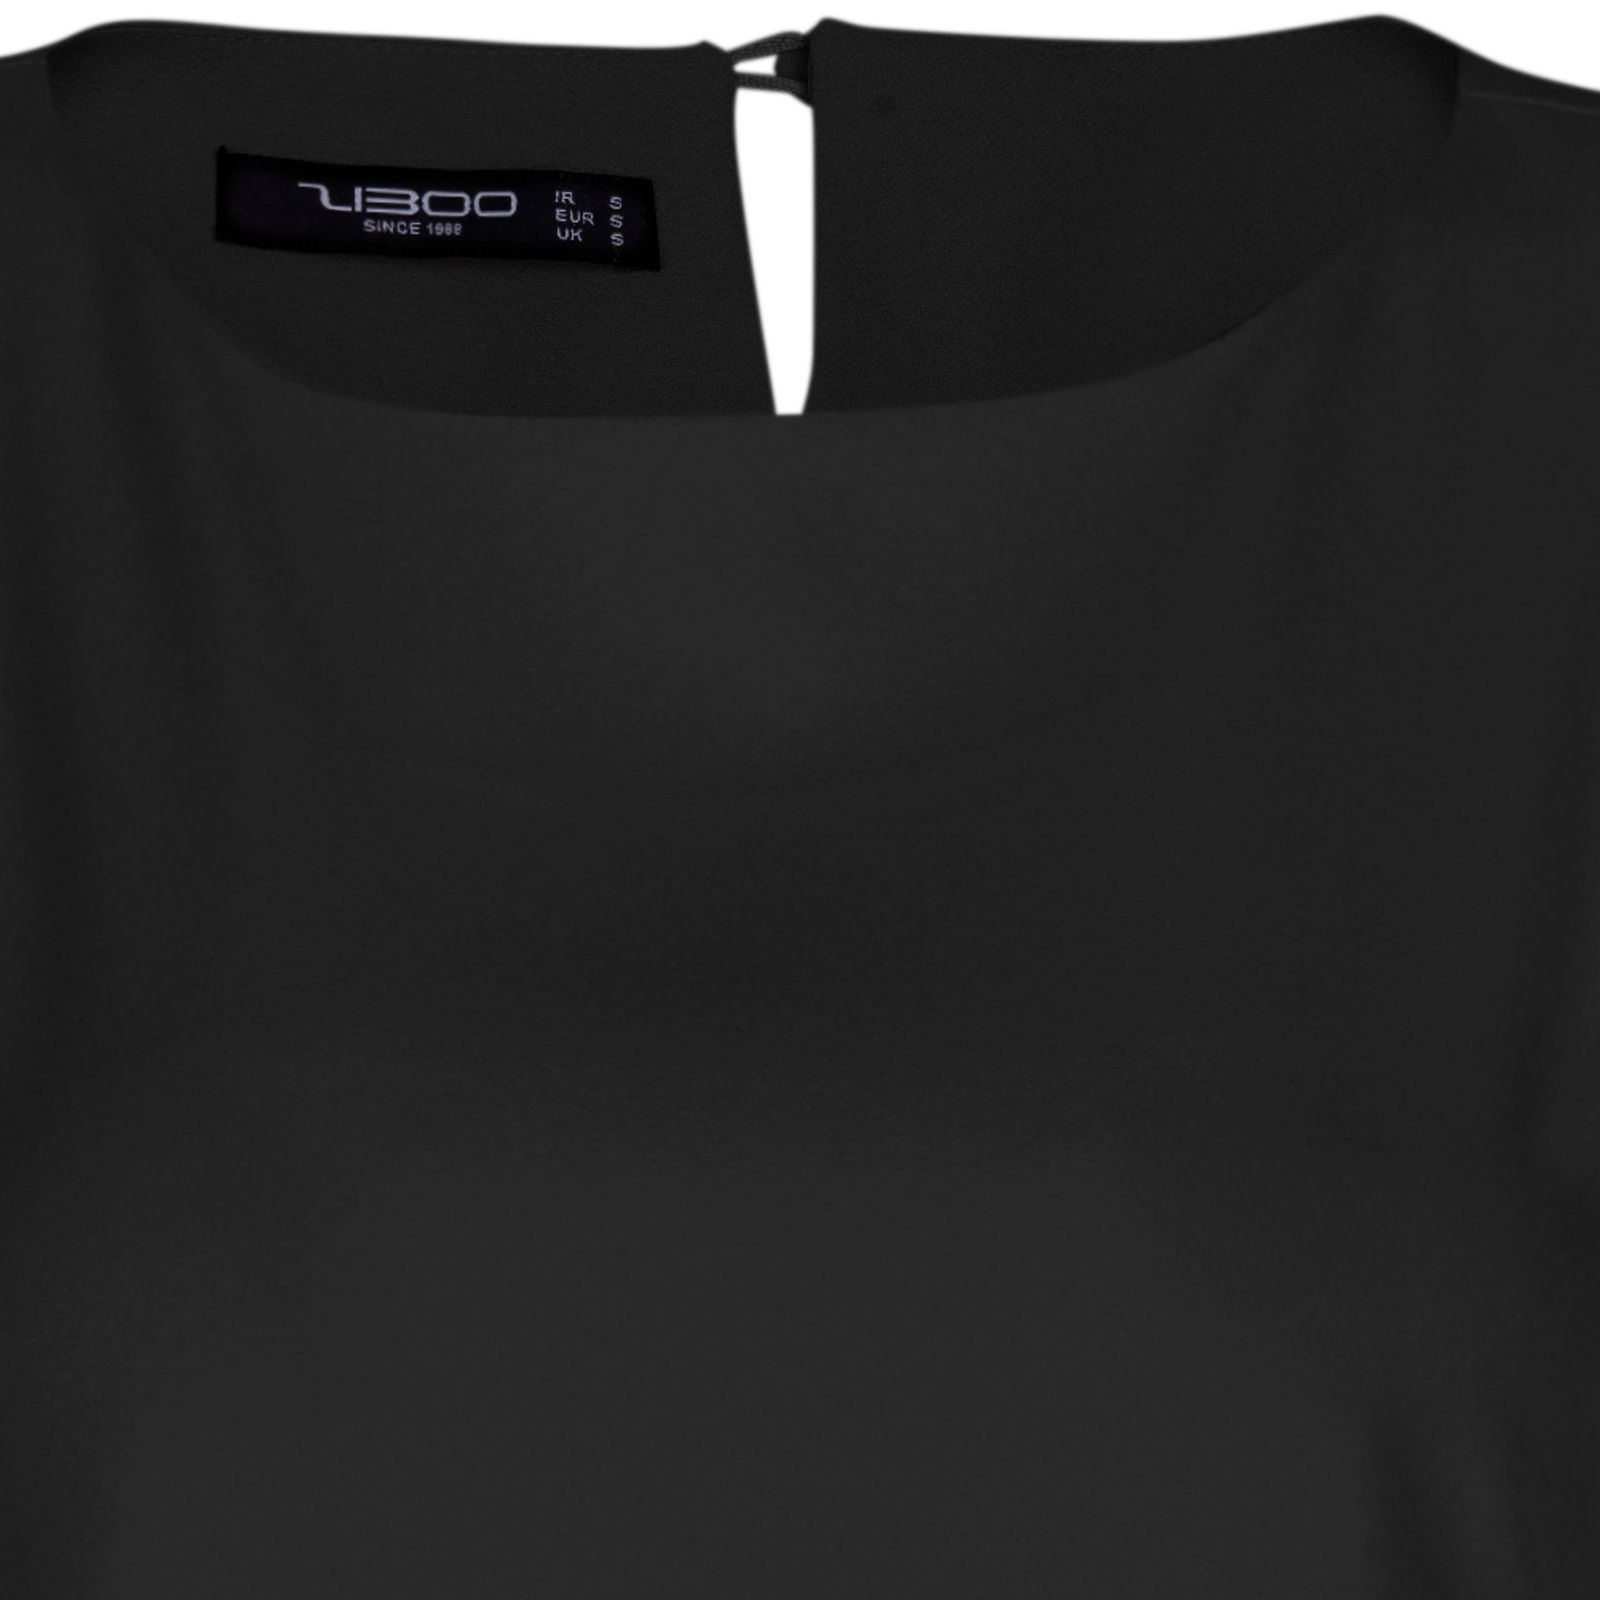 پیراهن زنانه زیبو مدل شادان کد 01203 -  - 5